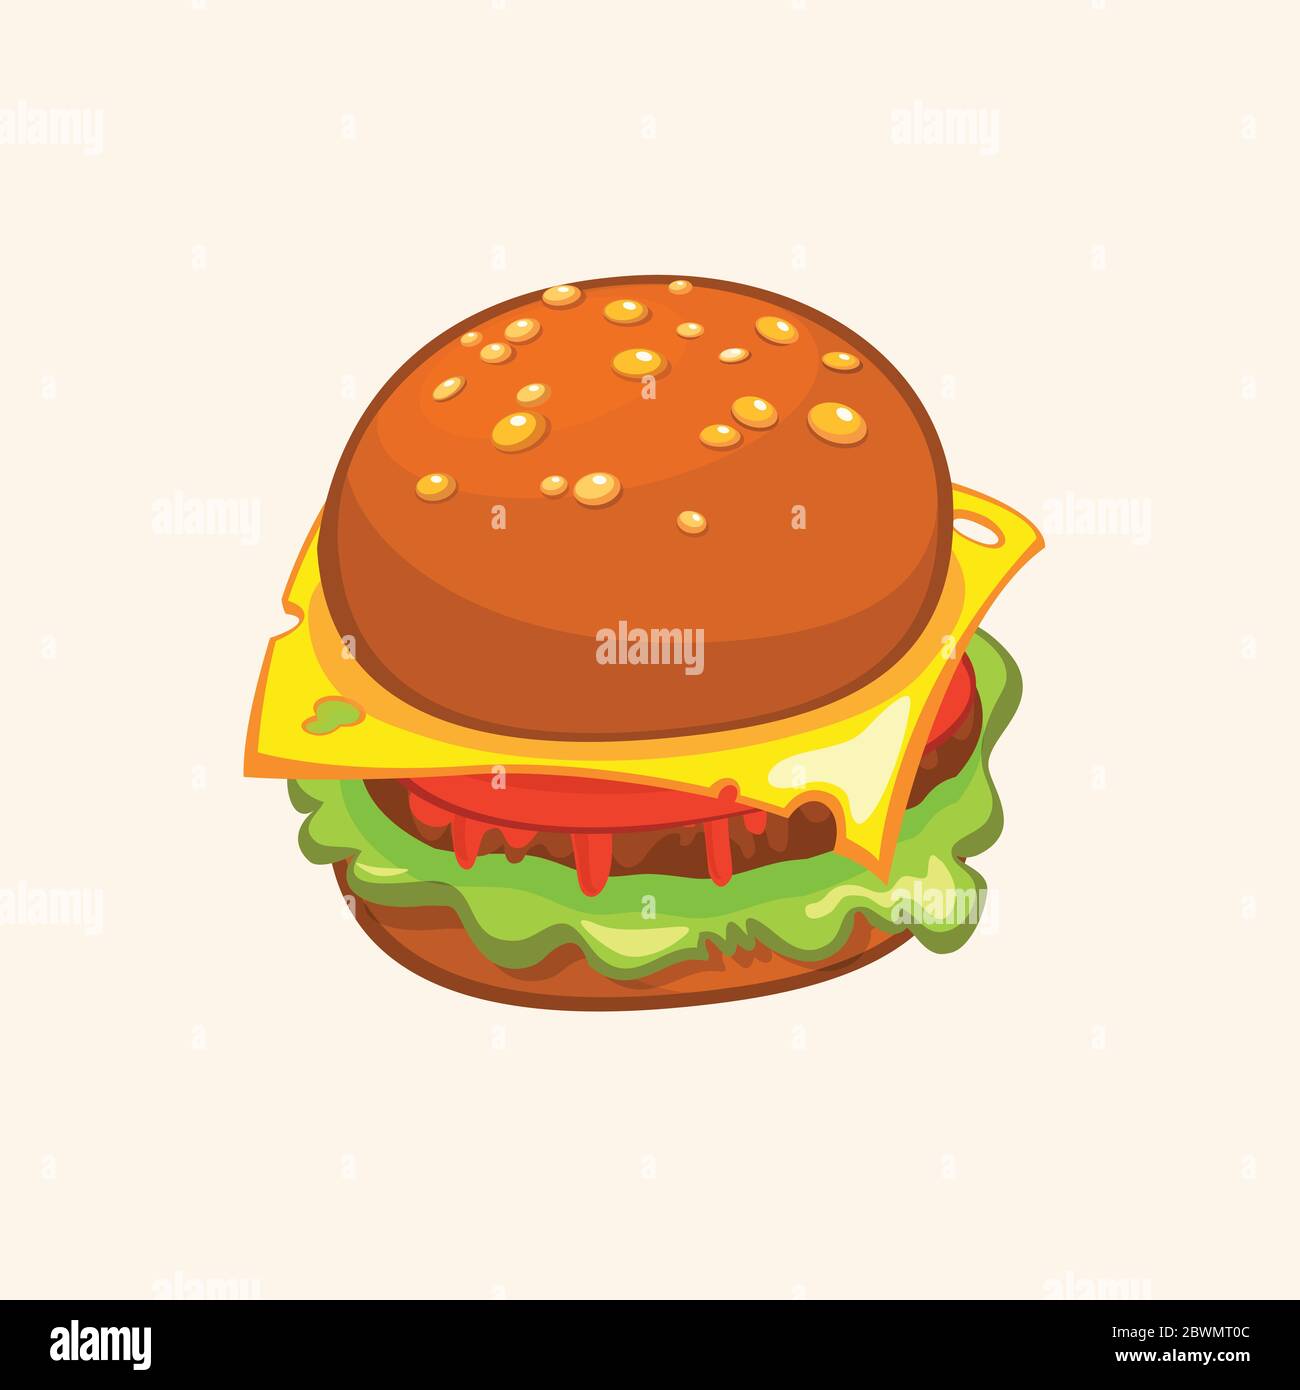 Cartoon Cheeseburger. Vektor-Zeichnung von Hamburger mit Käse, Tomaten, hacken, Salat, Zwiebeln, Gurke in flacher Cartoon-Stil. Abbildung für Design Stock Vektor